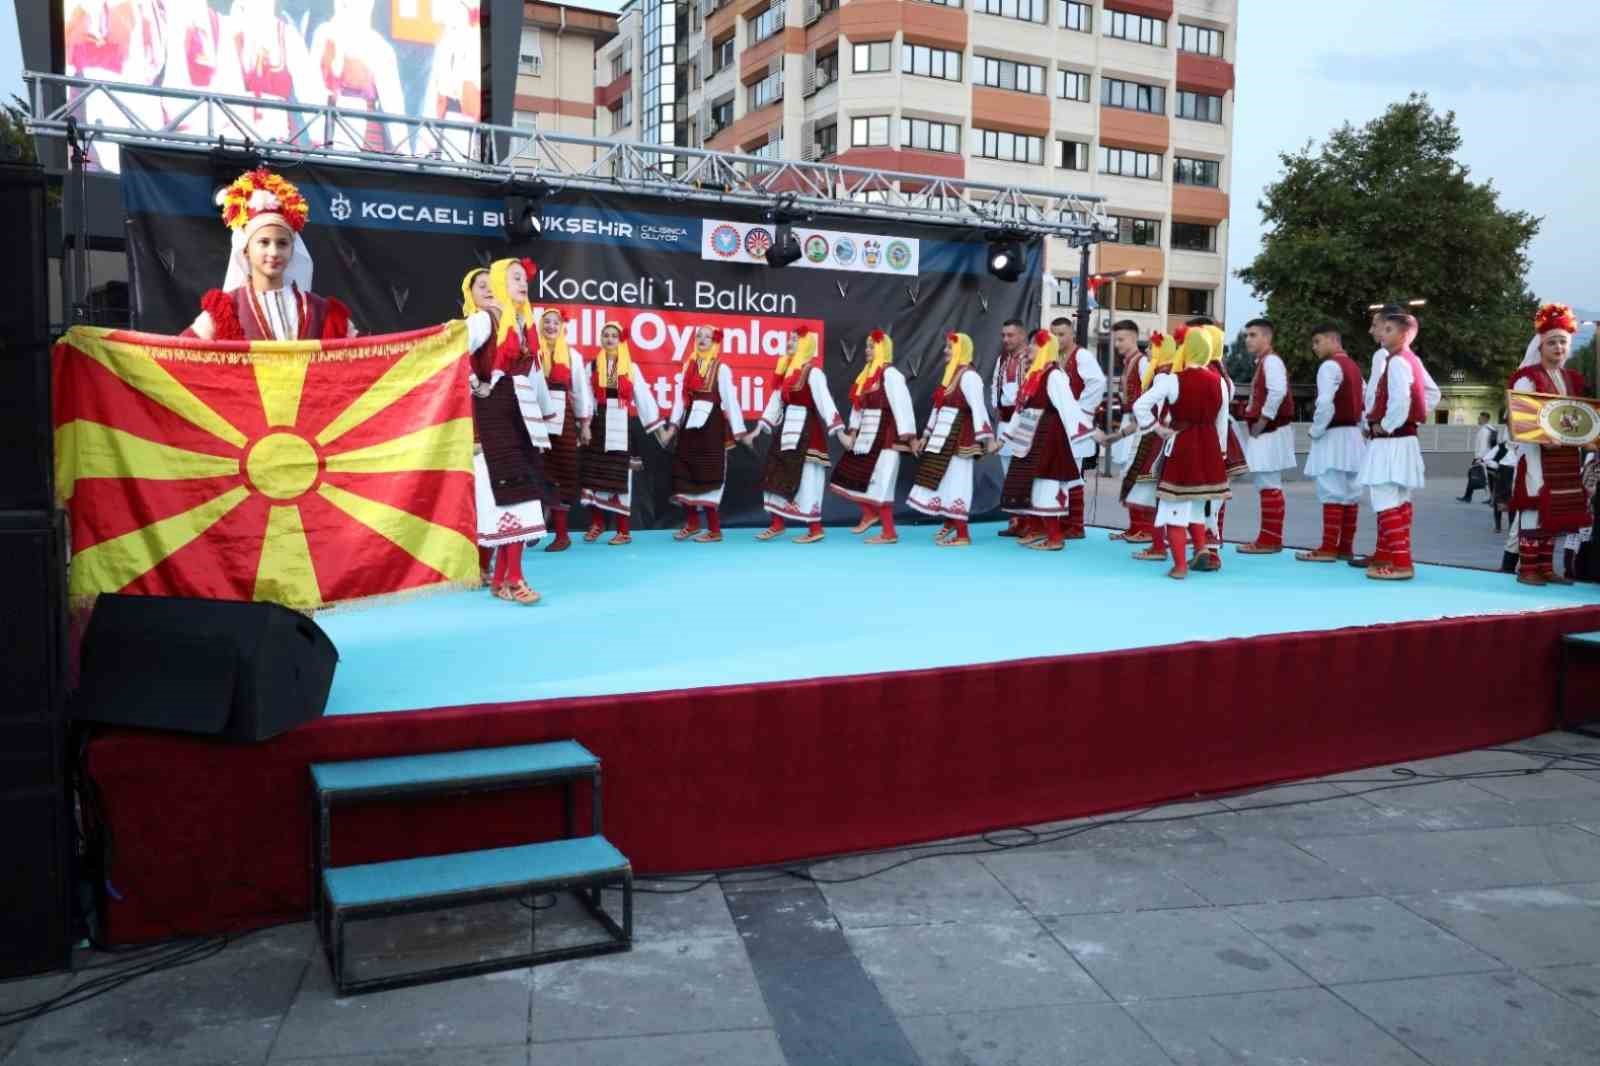 Kocaeli 1. Balkan Halk Oyunları Festivali başladı
